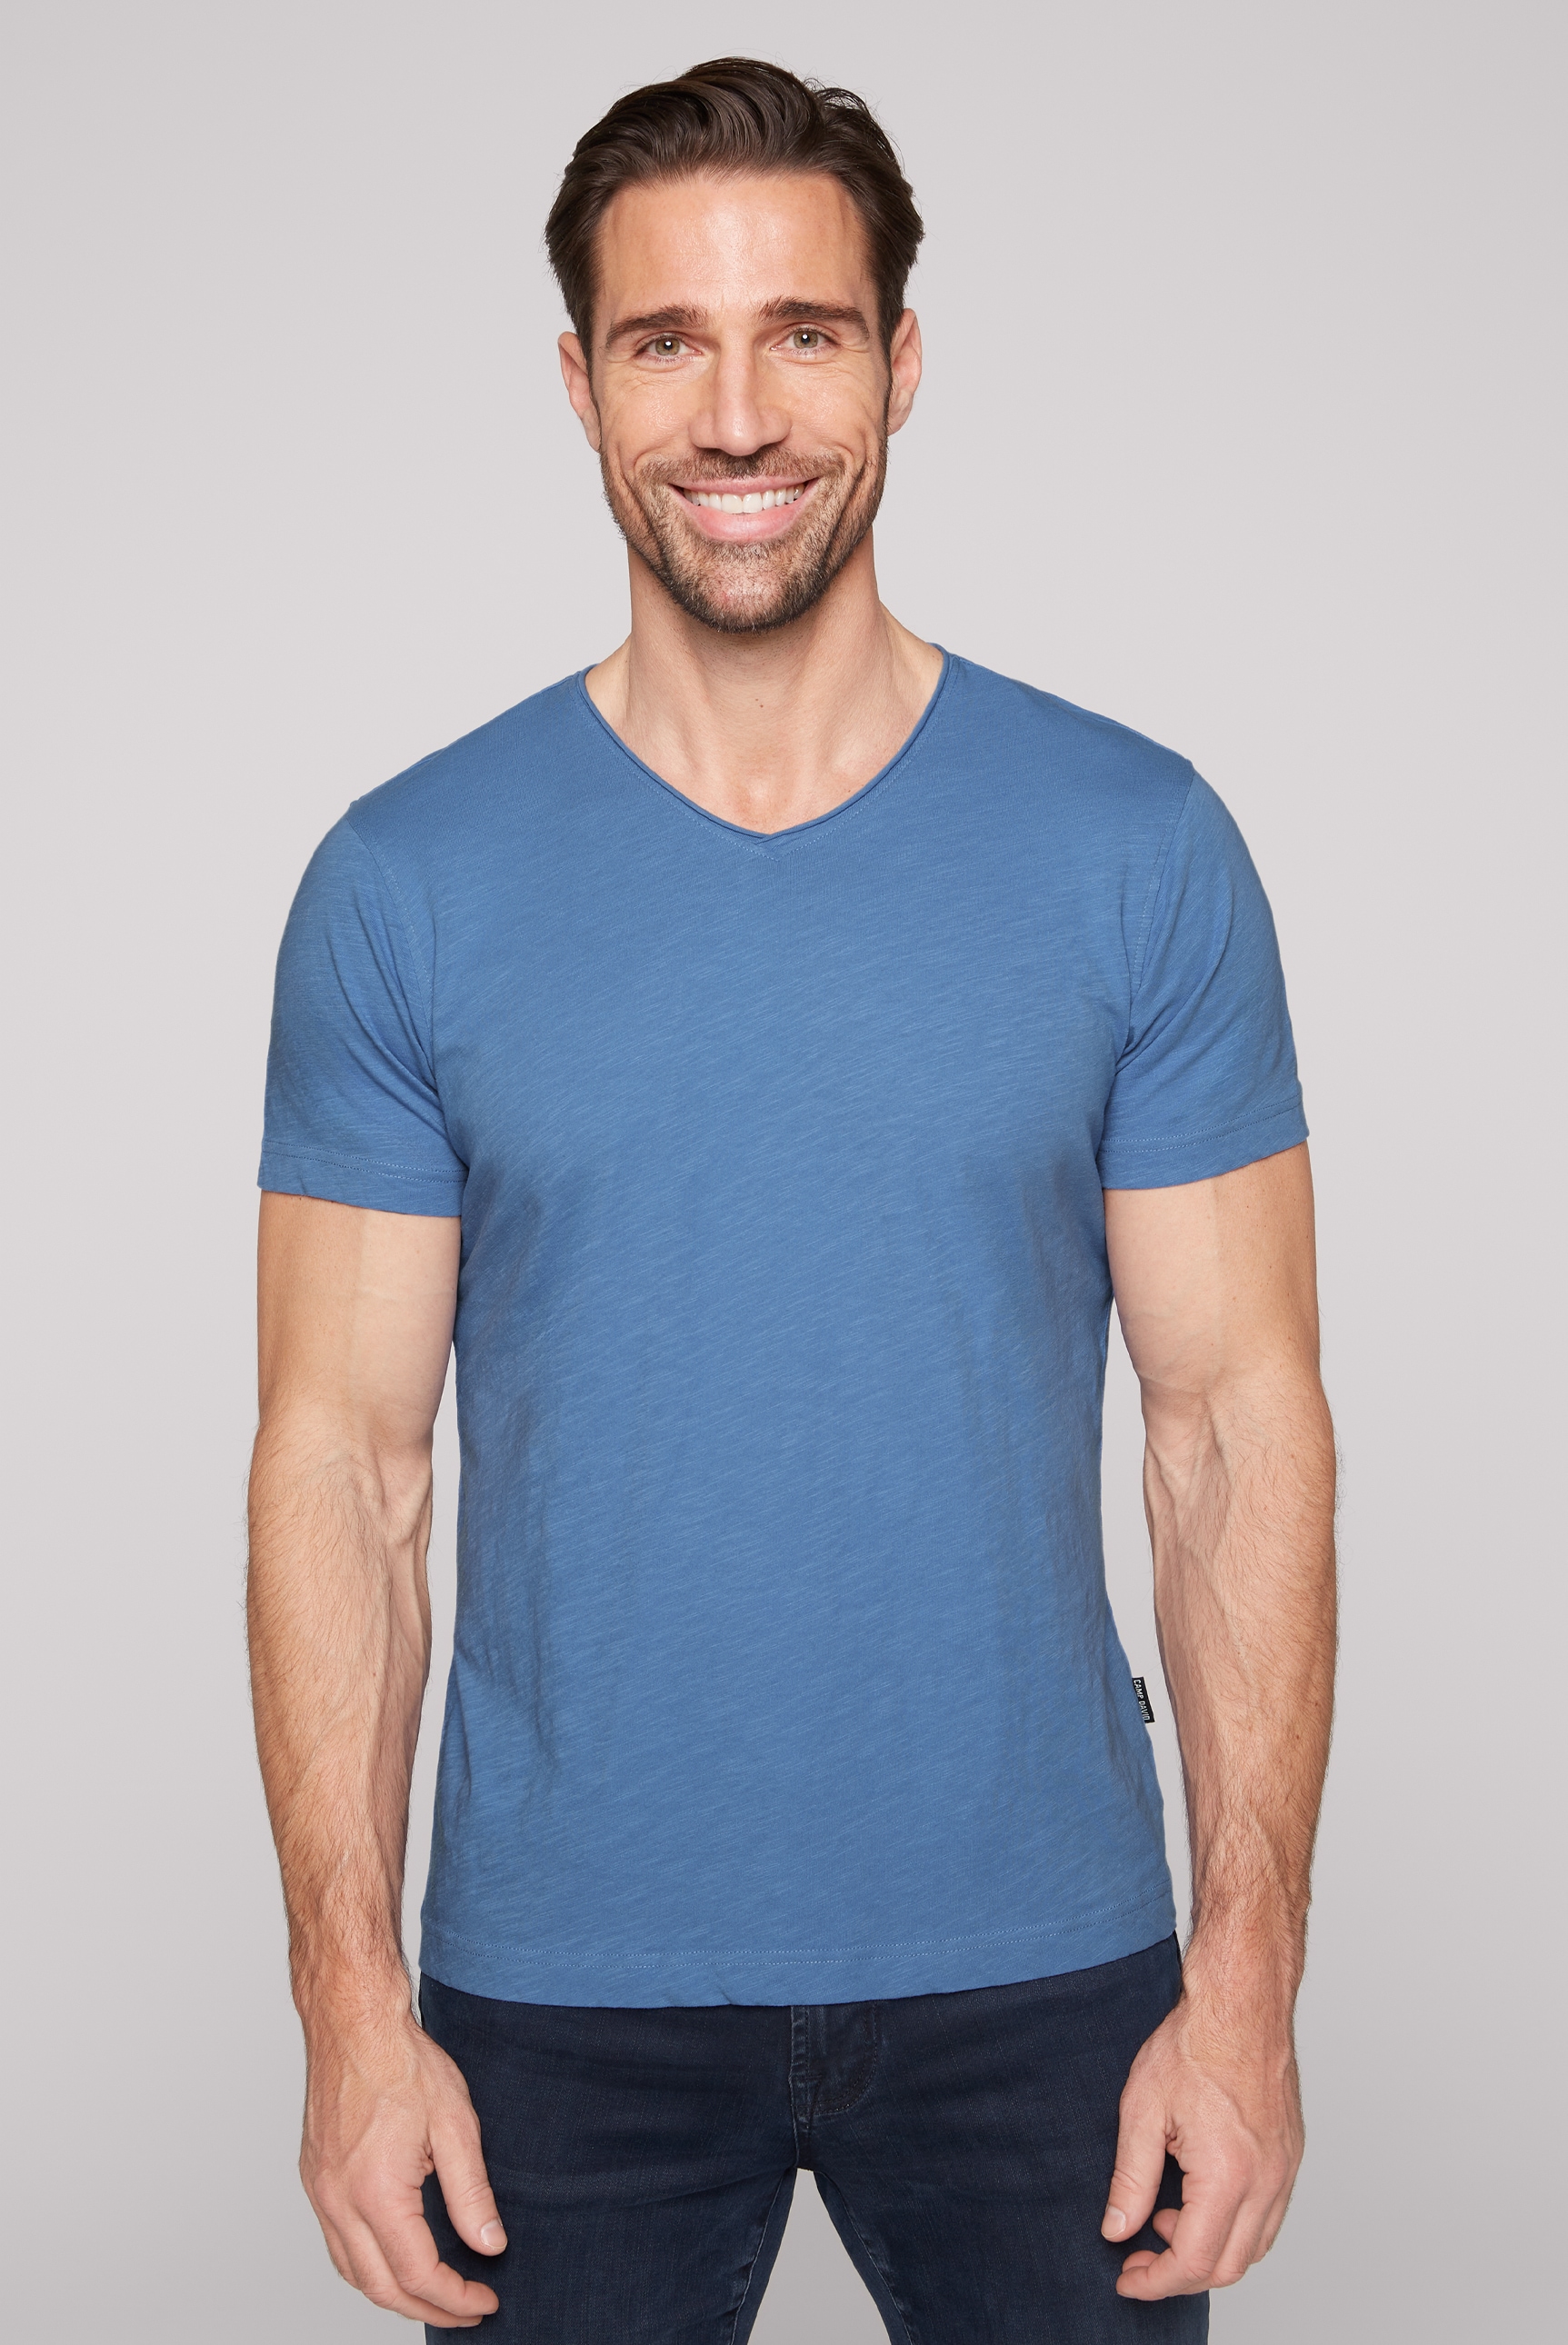 CAMP DAVID V-Shirt, aus Baumwolle